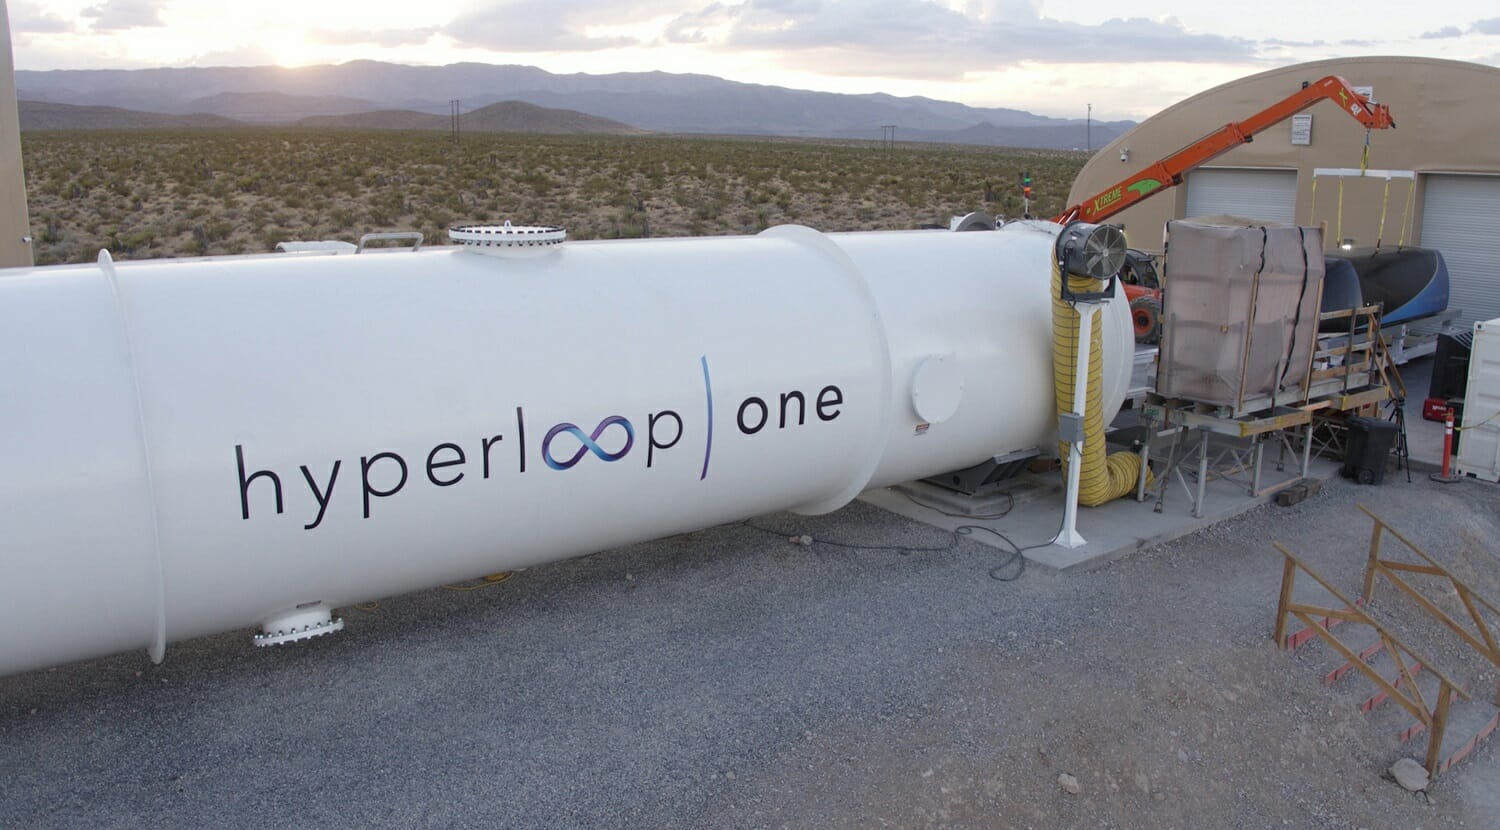 virgin hyperloop one chooses spain